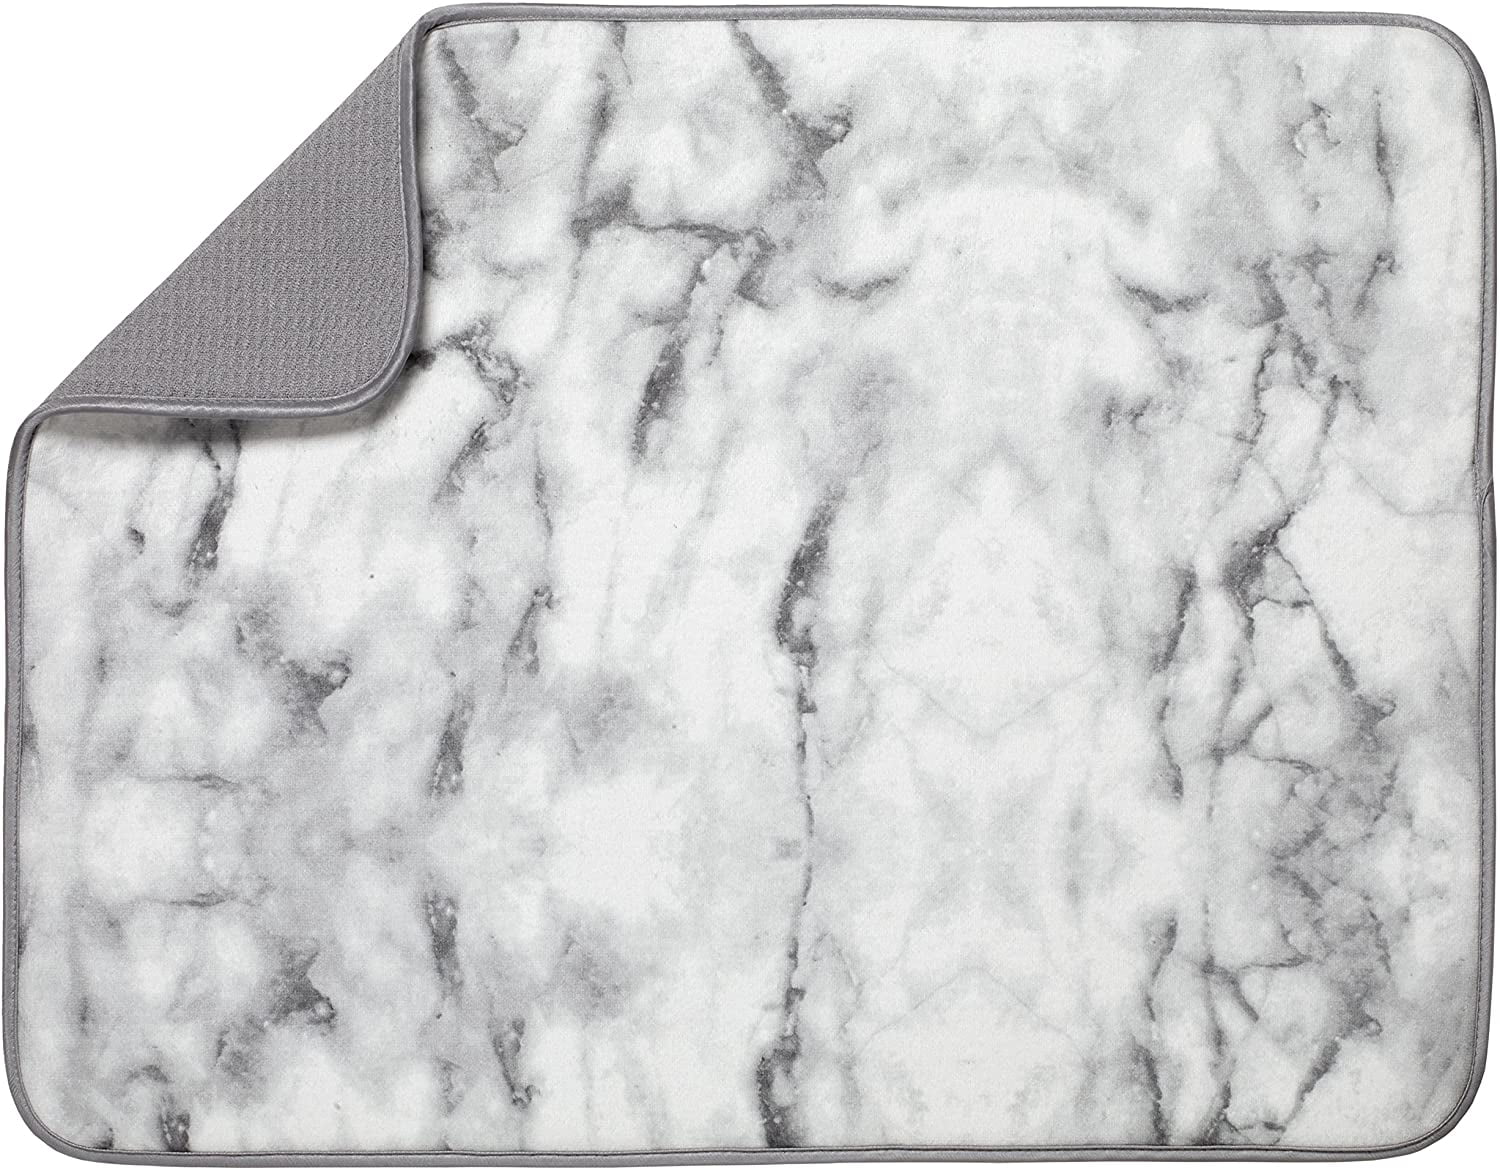  Bellemain XXL Dish Mat 24 x 17 (LARGEST MAT) Microfiber Dish  Drying Mat, Super absorbent (Gray): Home & Kitchen